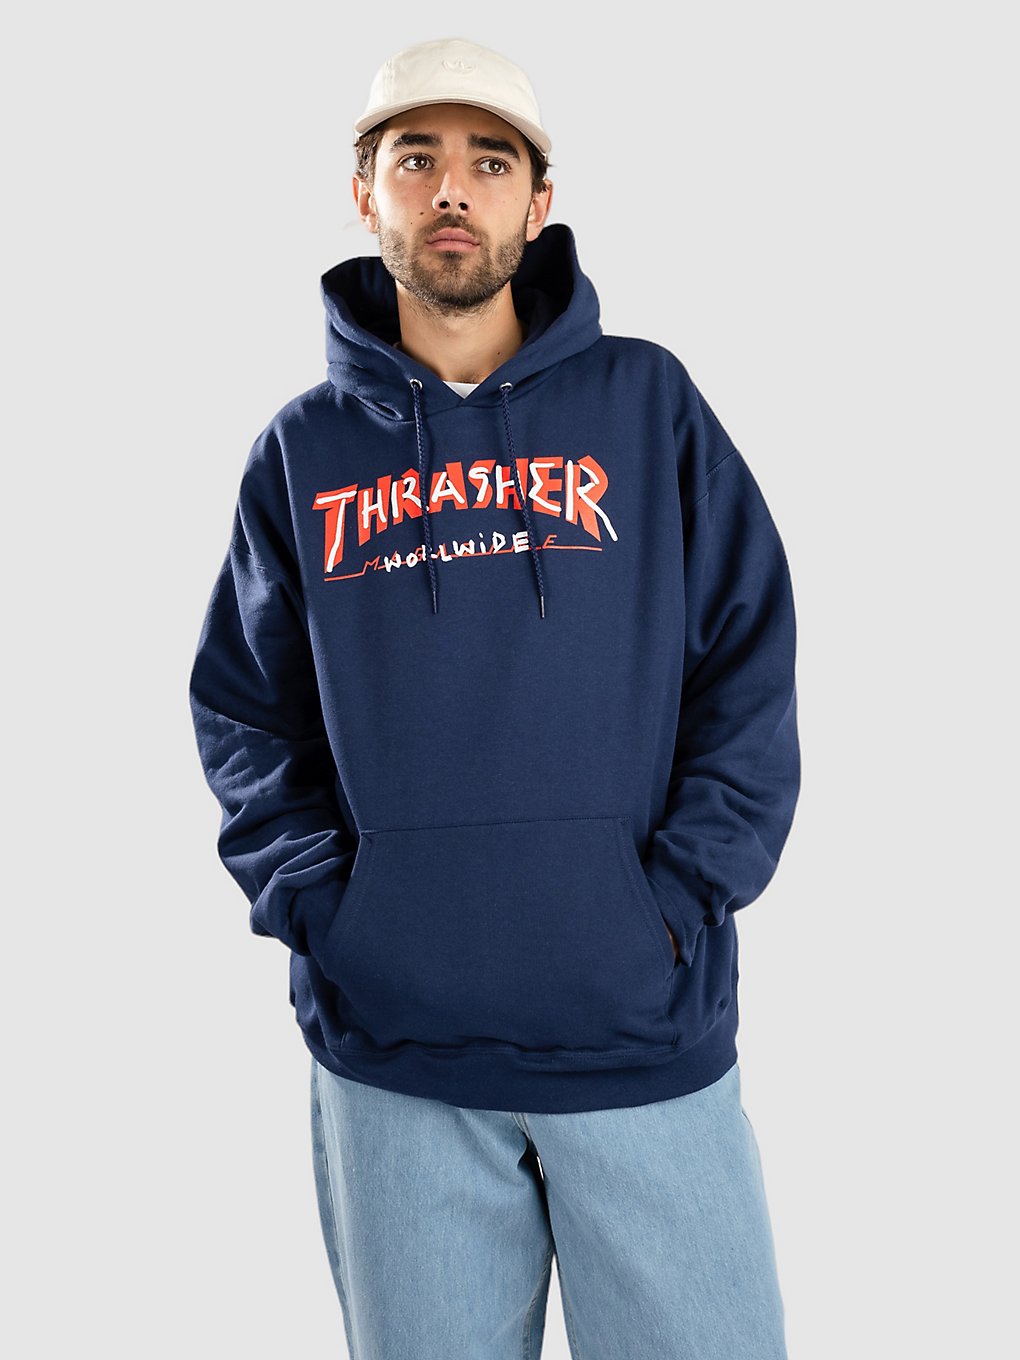 Thrasher Trademark Hoodie navy kaufen